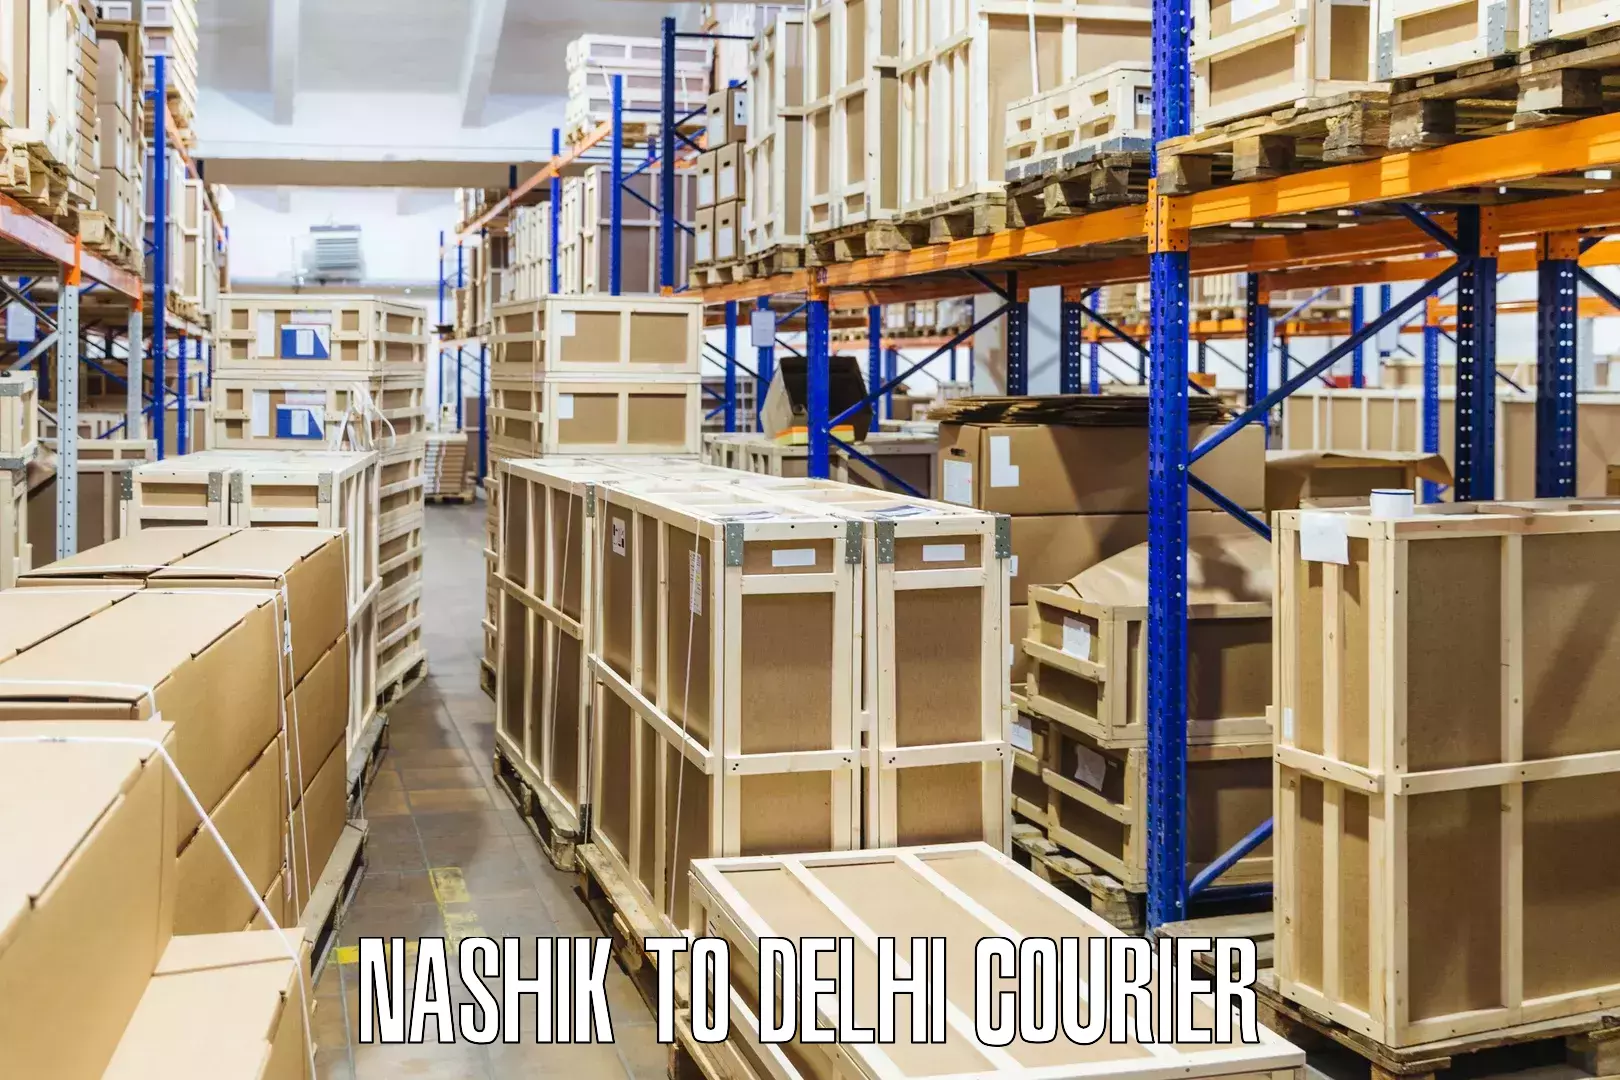 Personal parcel delivery Nashik to Kalkaji